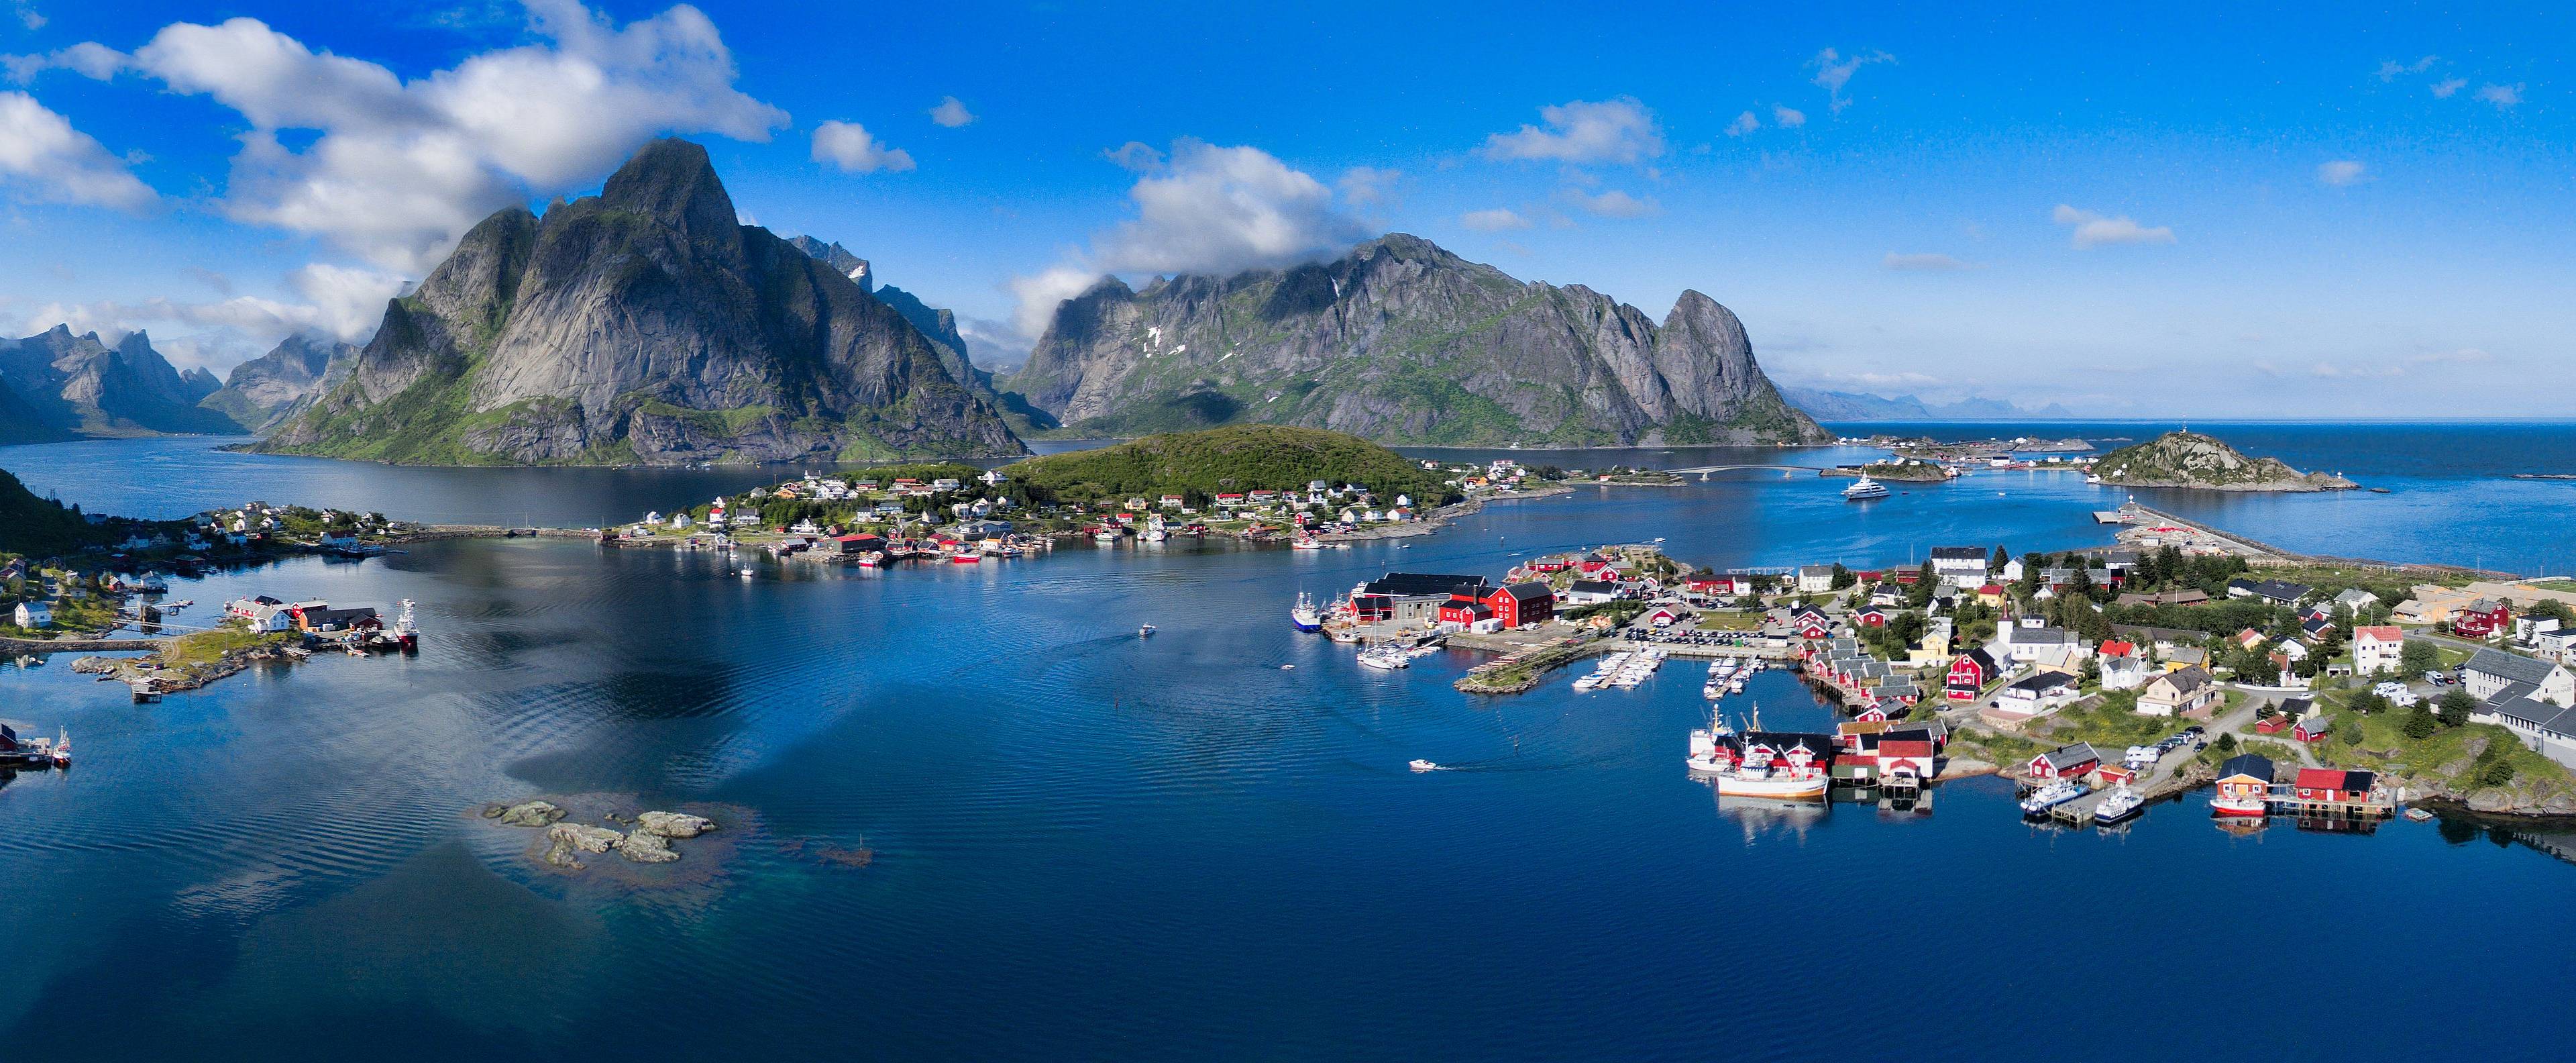 Crea tu viaje a Noruega en otoño 100% a medida